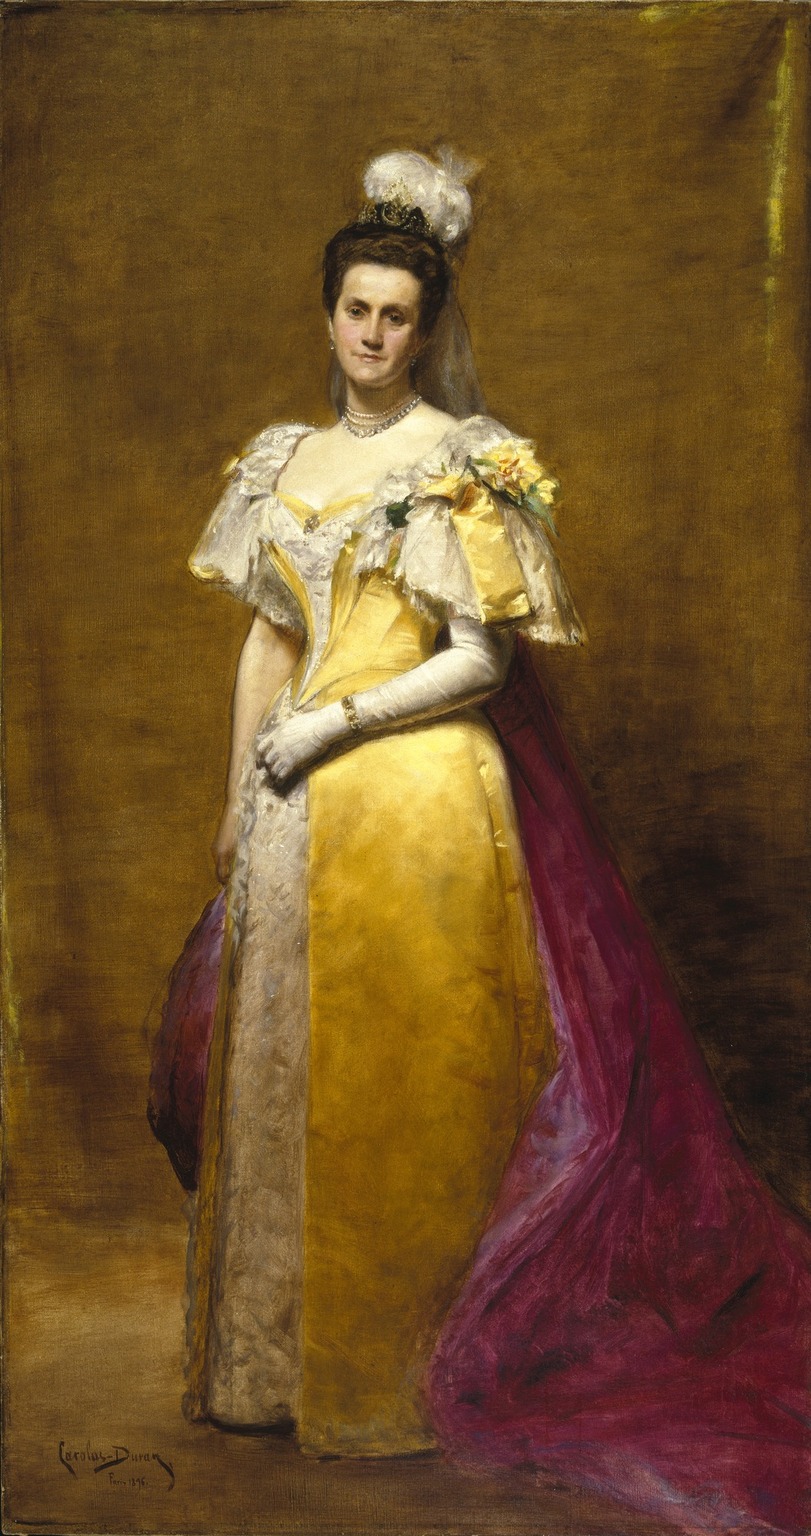 Une peinture d’une femme en robe jaune posant.